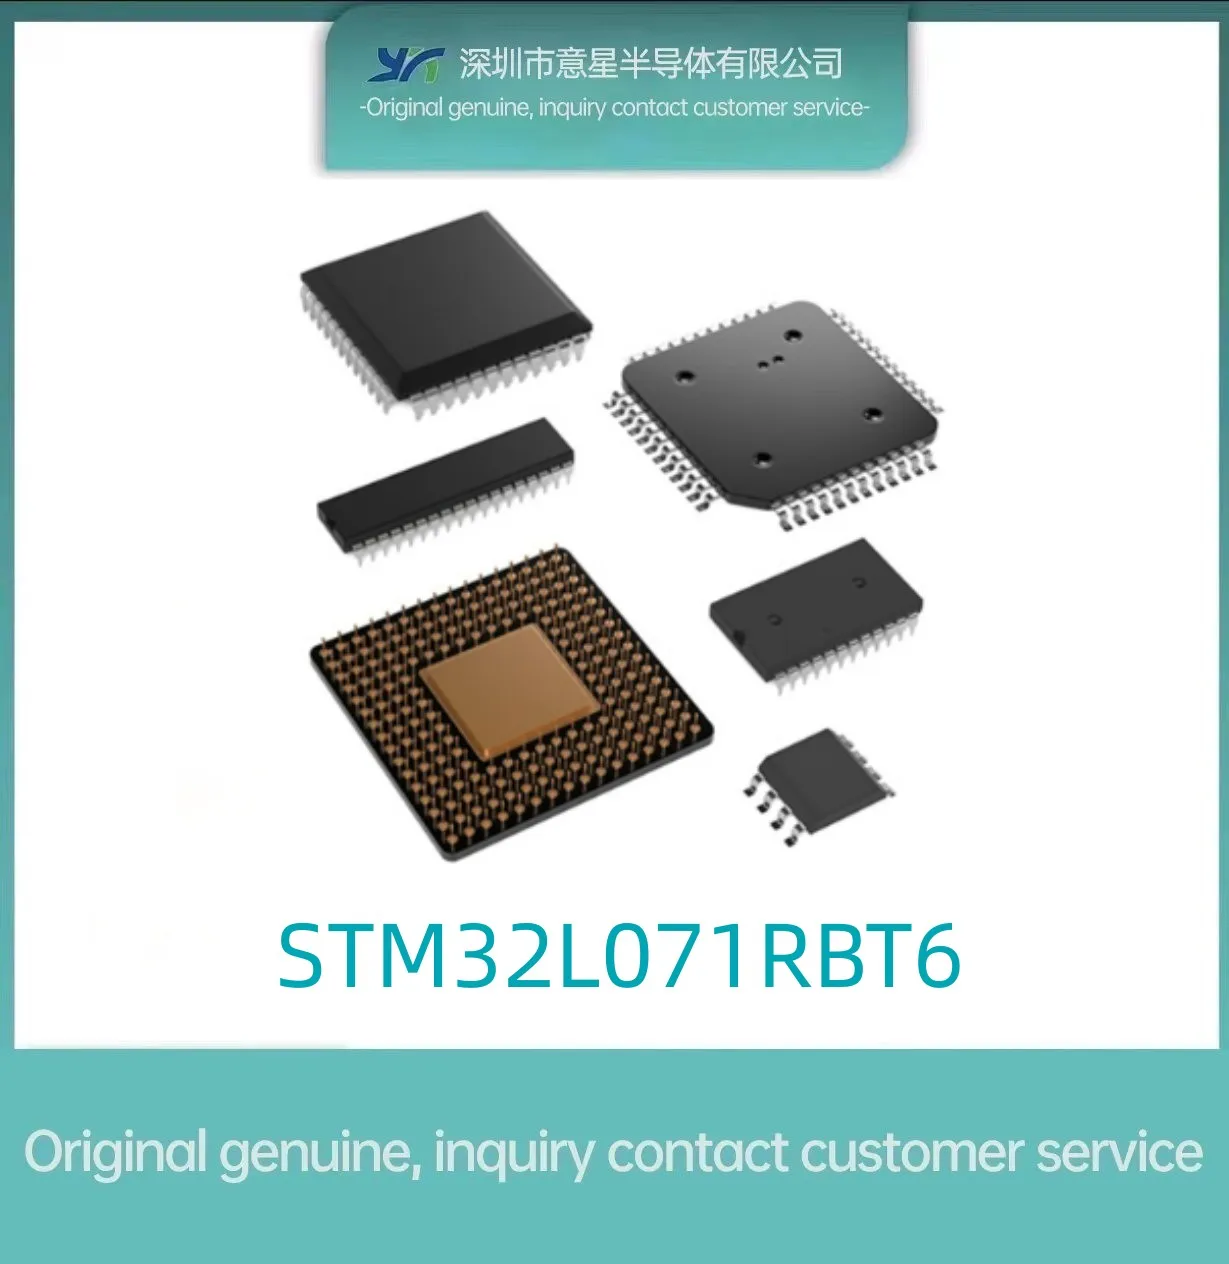 STM32L071RBT6 pachet LQFP64 stoc nou 071RBT6 microcontroler original autentic - 0